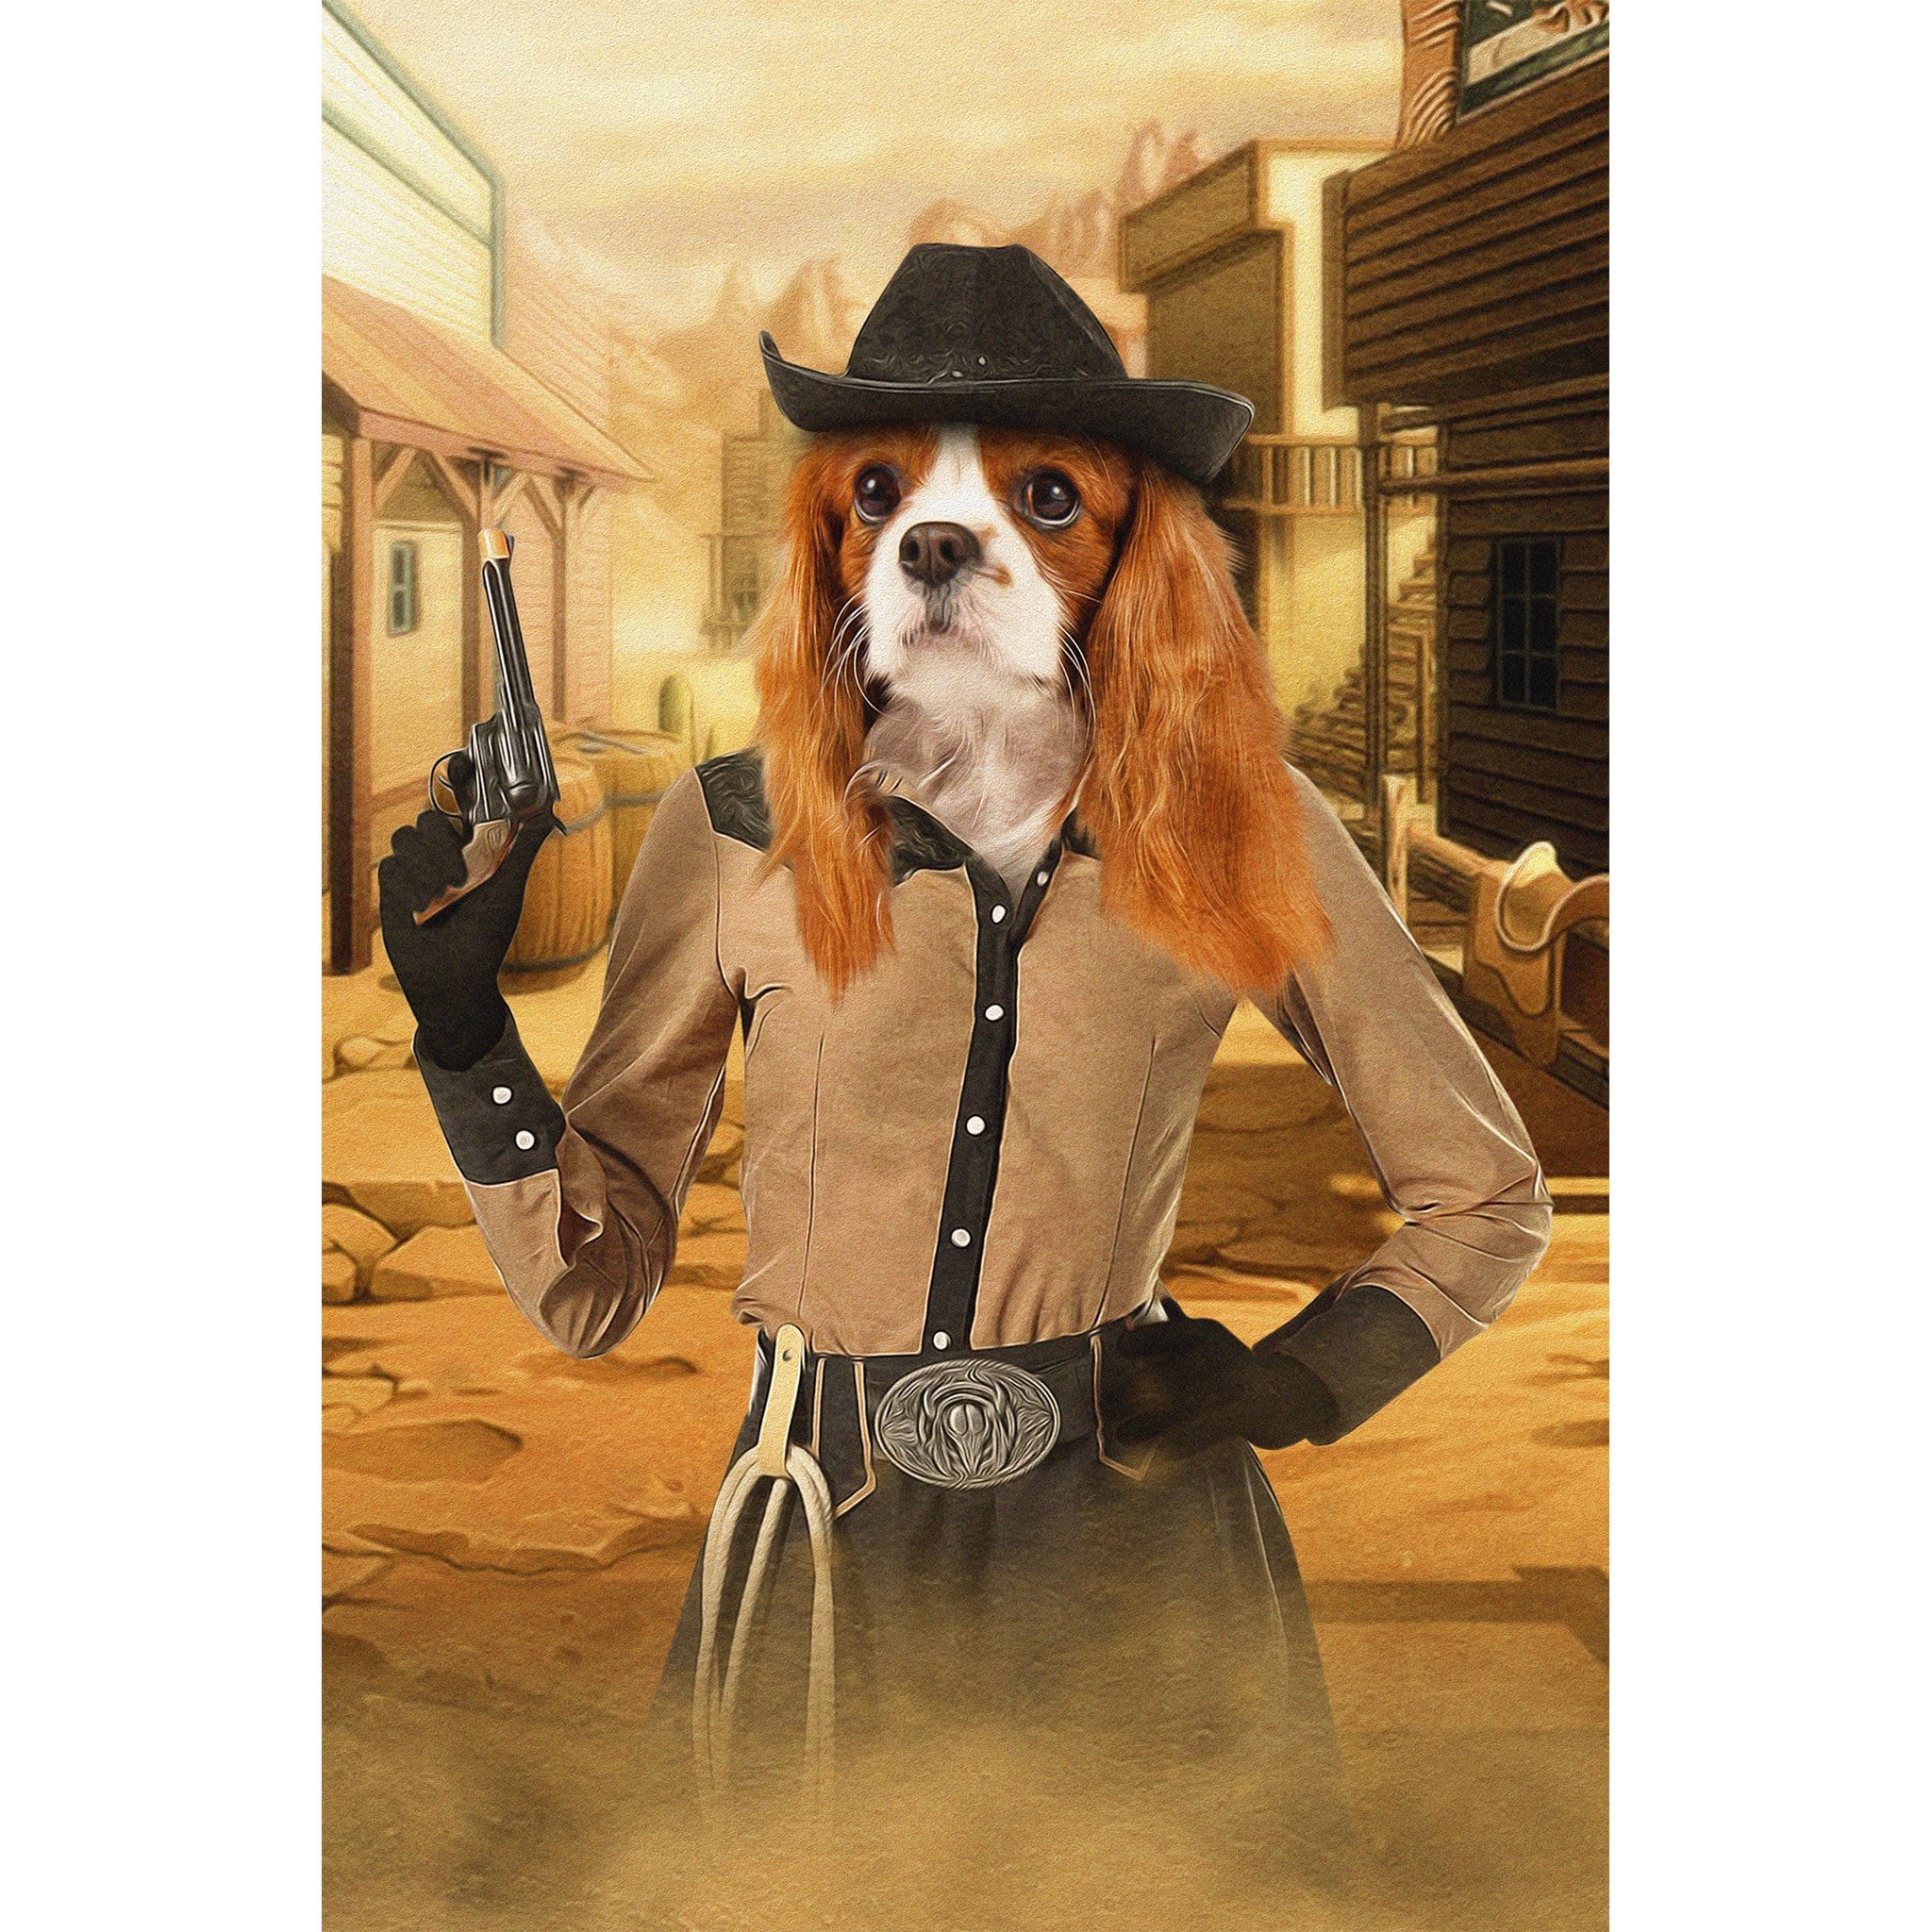 &#39;The Cowgirl&#39; Digital Portrait